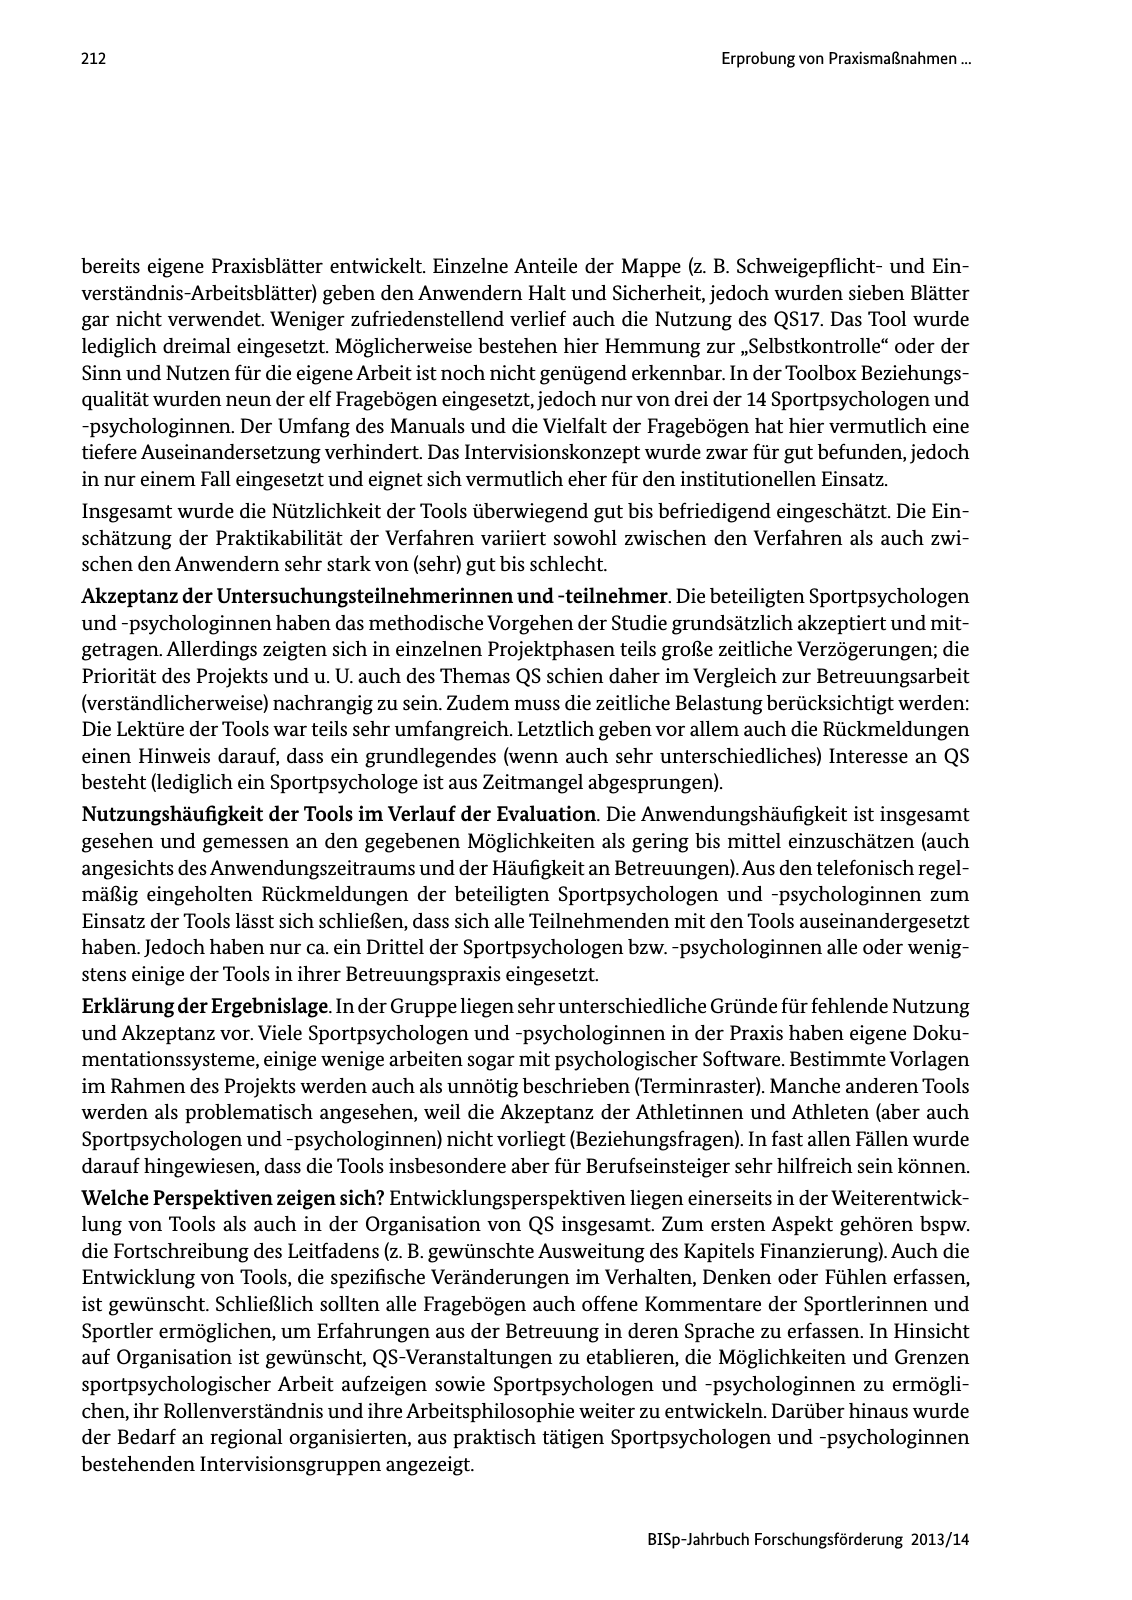 Vorschau BISp-Jahrbuch Forschungsförderung 2013/14 Seite 213